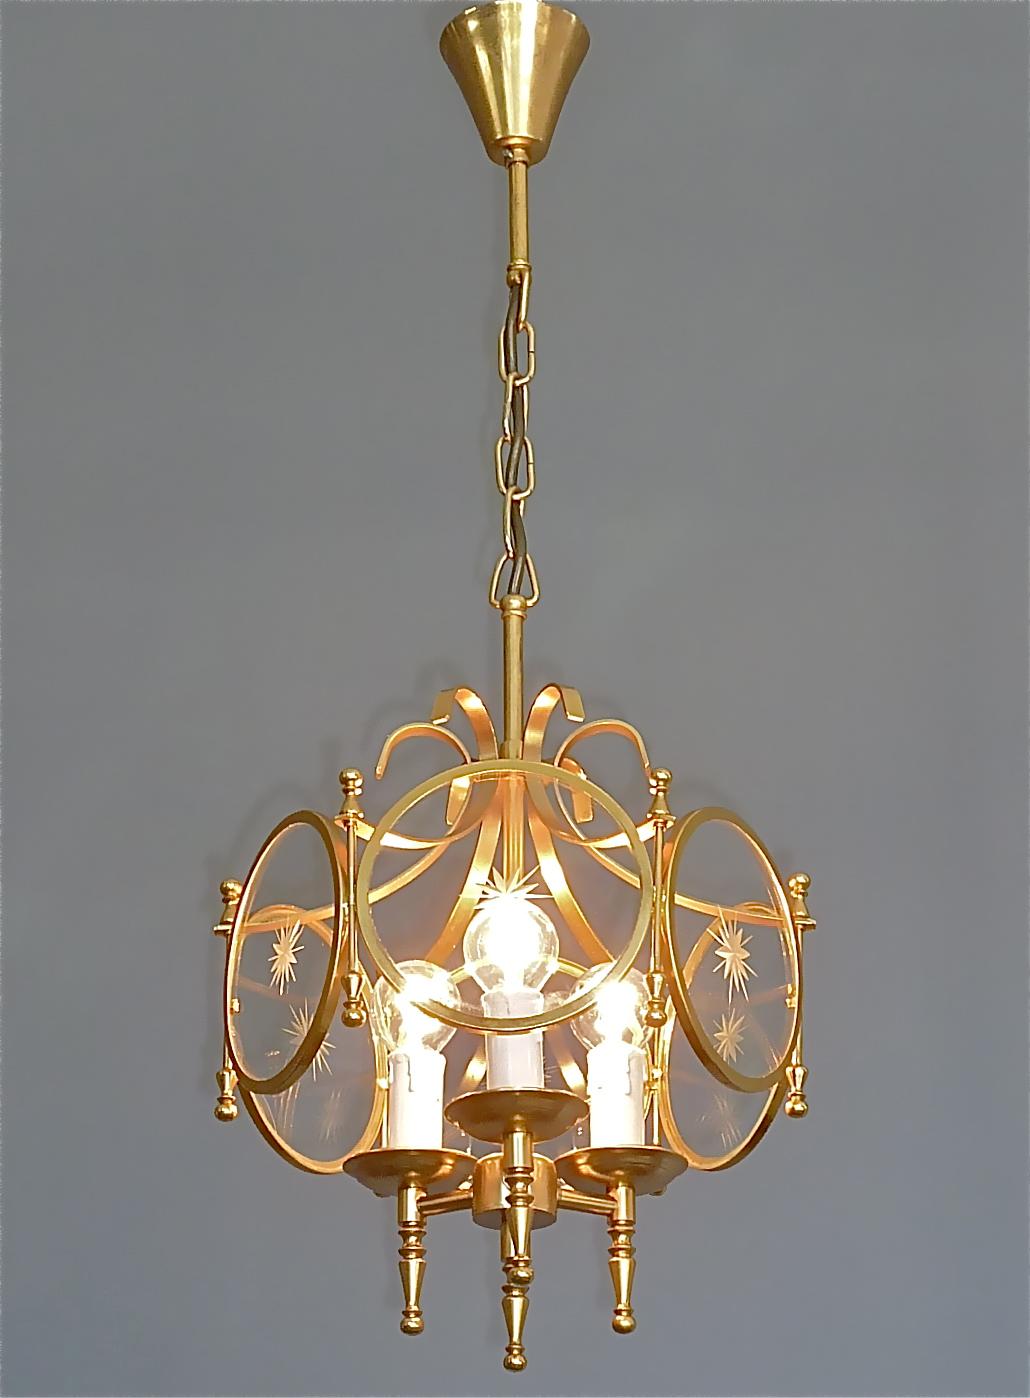 Magnifique lanterne en métal laiton doré et verre de cristal avec motif étoilé, réalisée par la Maison Jansen, France, vers les années 1950-1960. La fabuleuse lampe à suspension vintage est éclairée par trois ampoules à vis standard E14. Le câblage